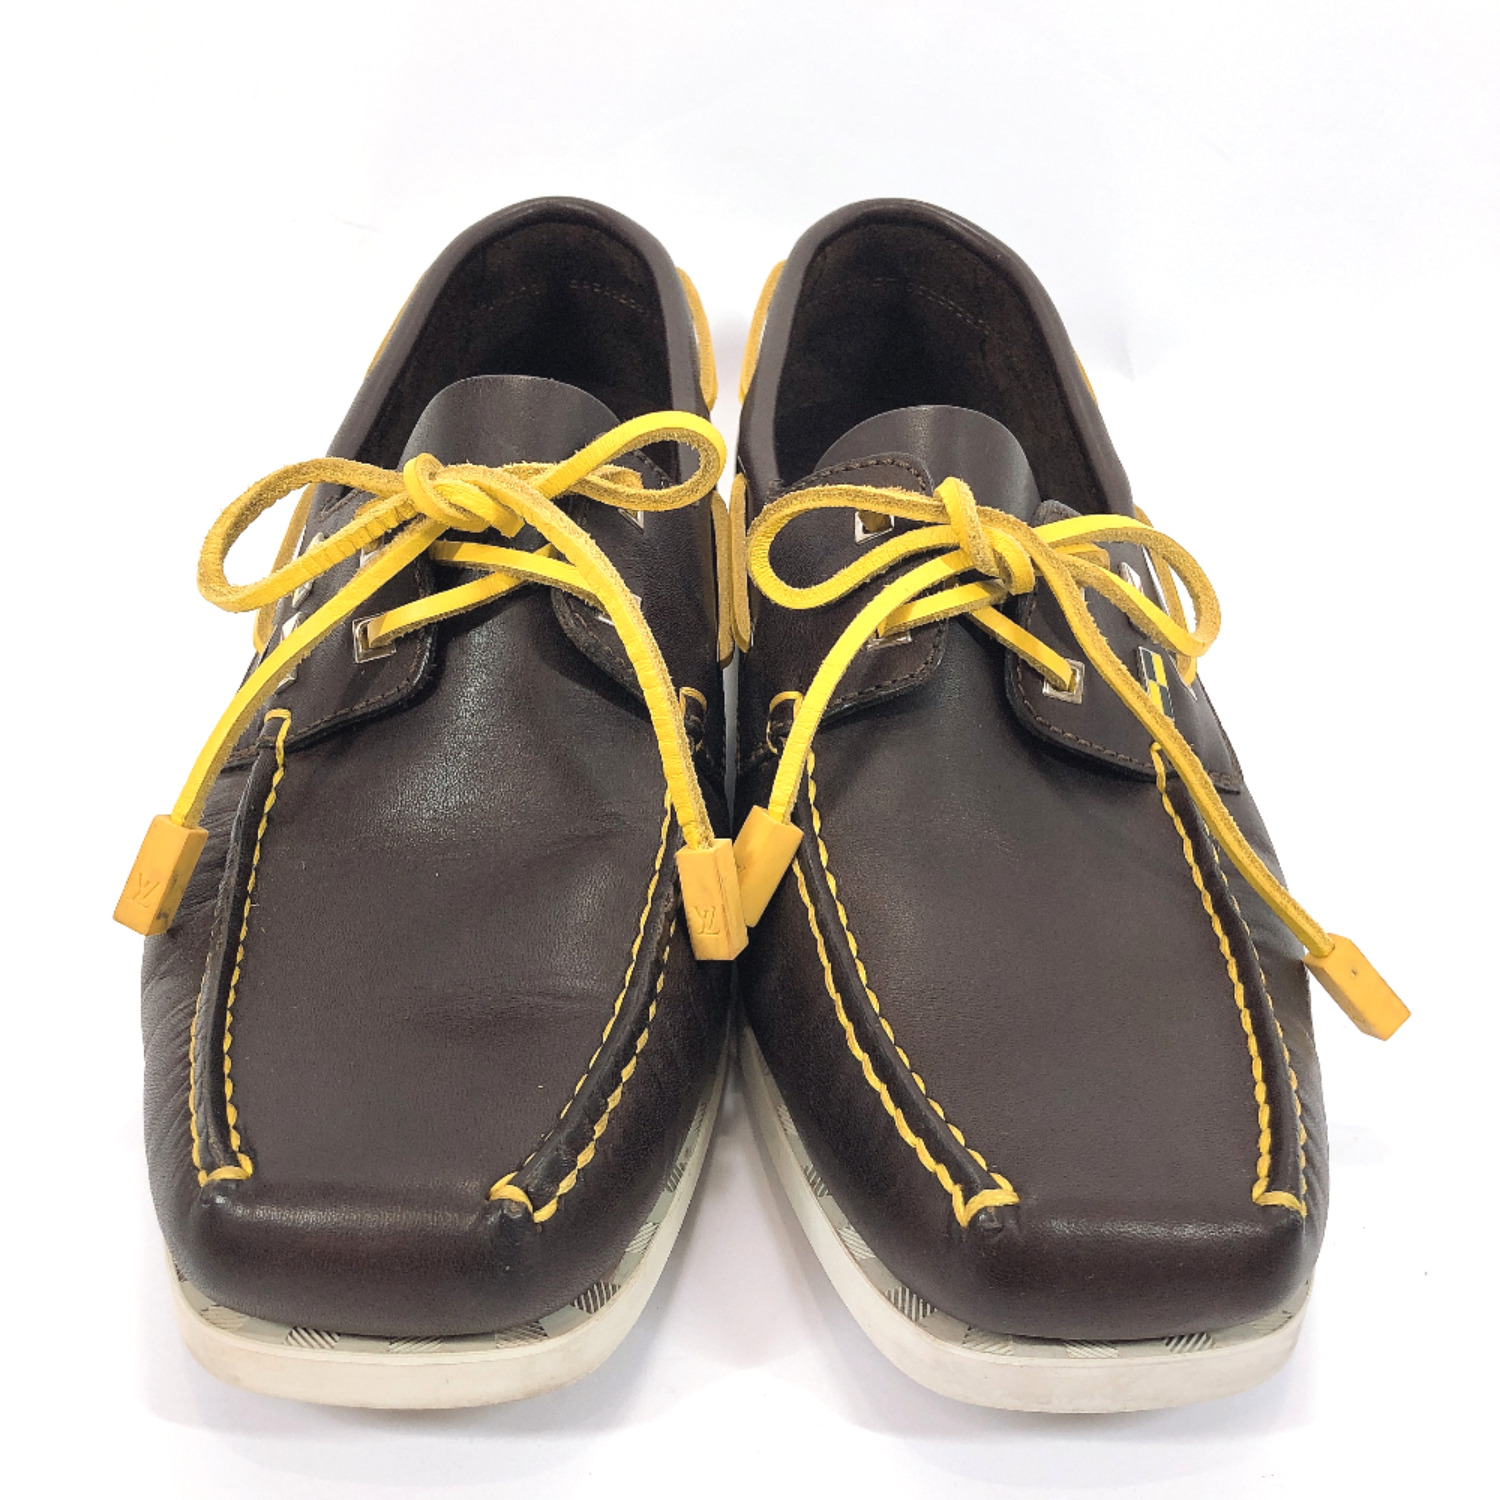 LOUIS VUITTON Deck shoes Louis Vuitton cup leather yellow mens 6 1/2 size | eBay